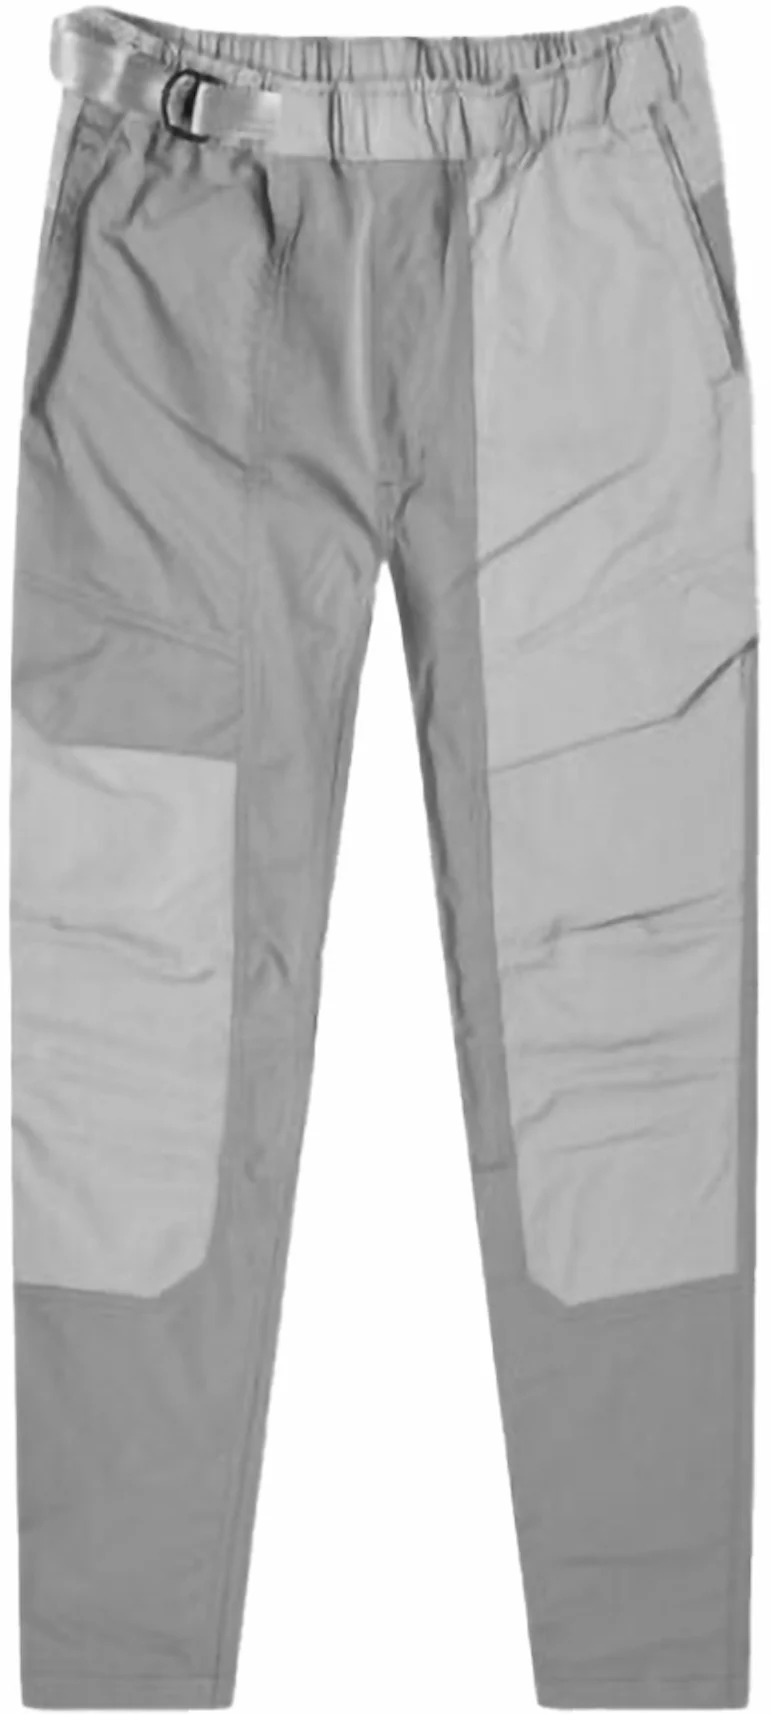 Nike Sportswear Tech Knit Pants Gunsmoke 892553-036 Men's XL Retail $190